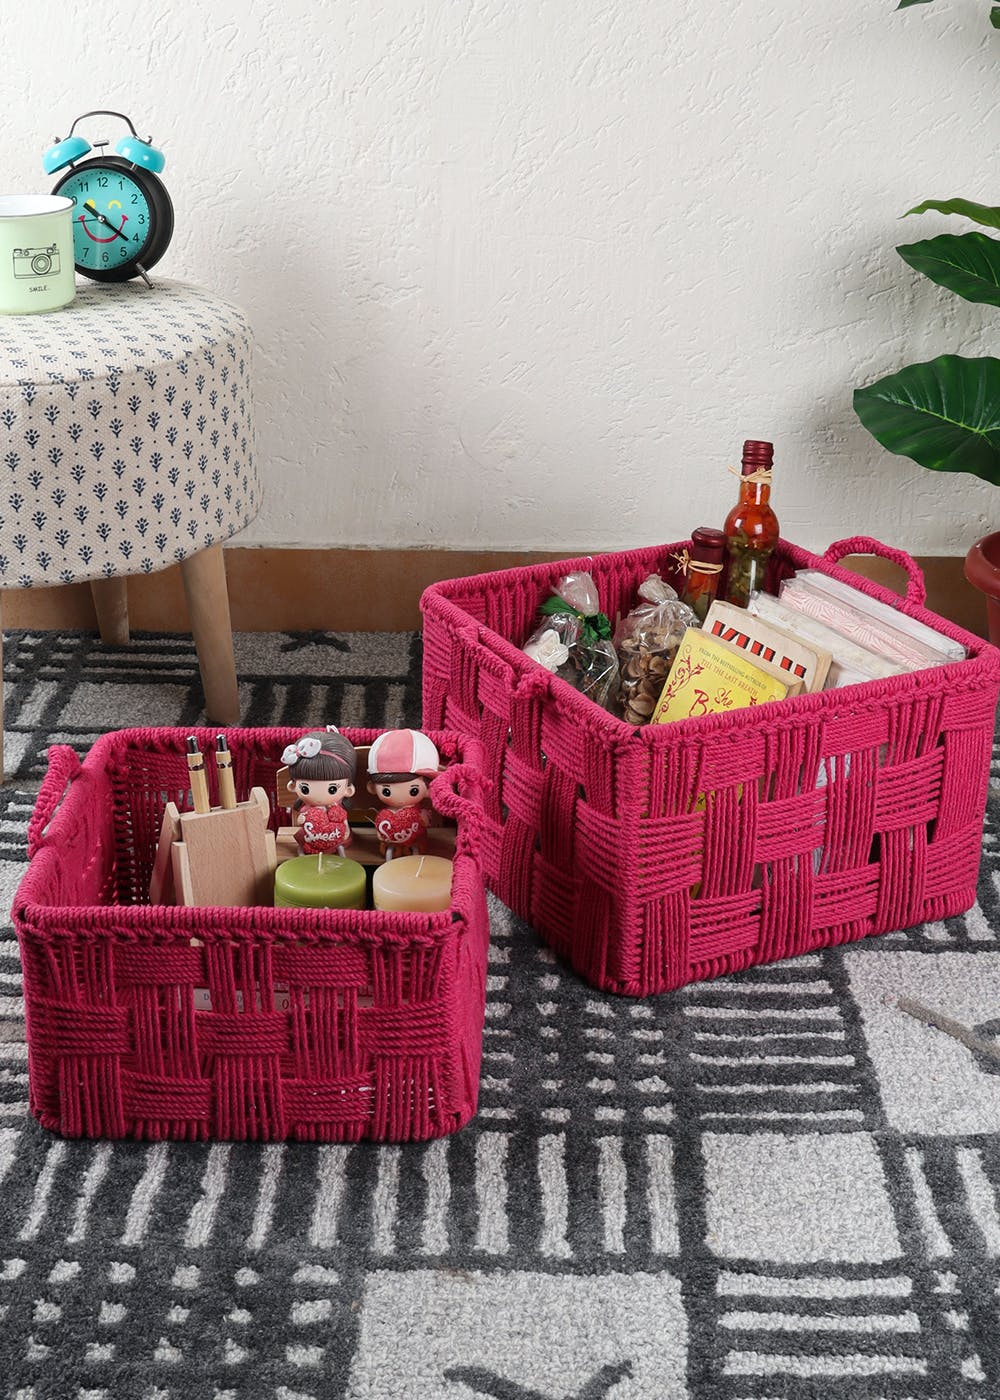 Cotton Rope Basket - Set of 2 - Pink